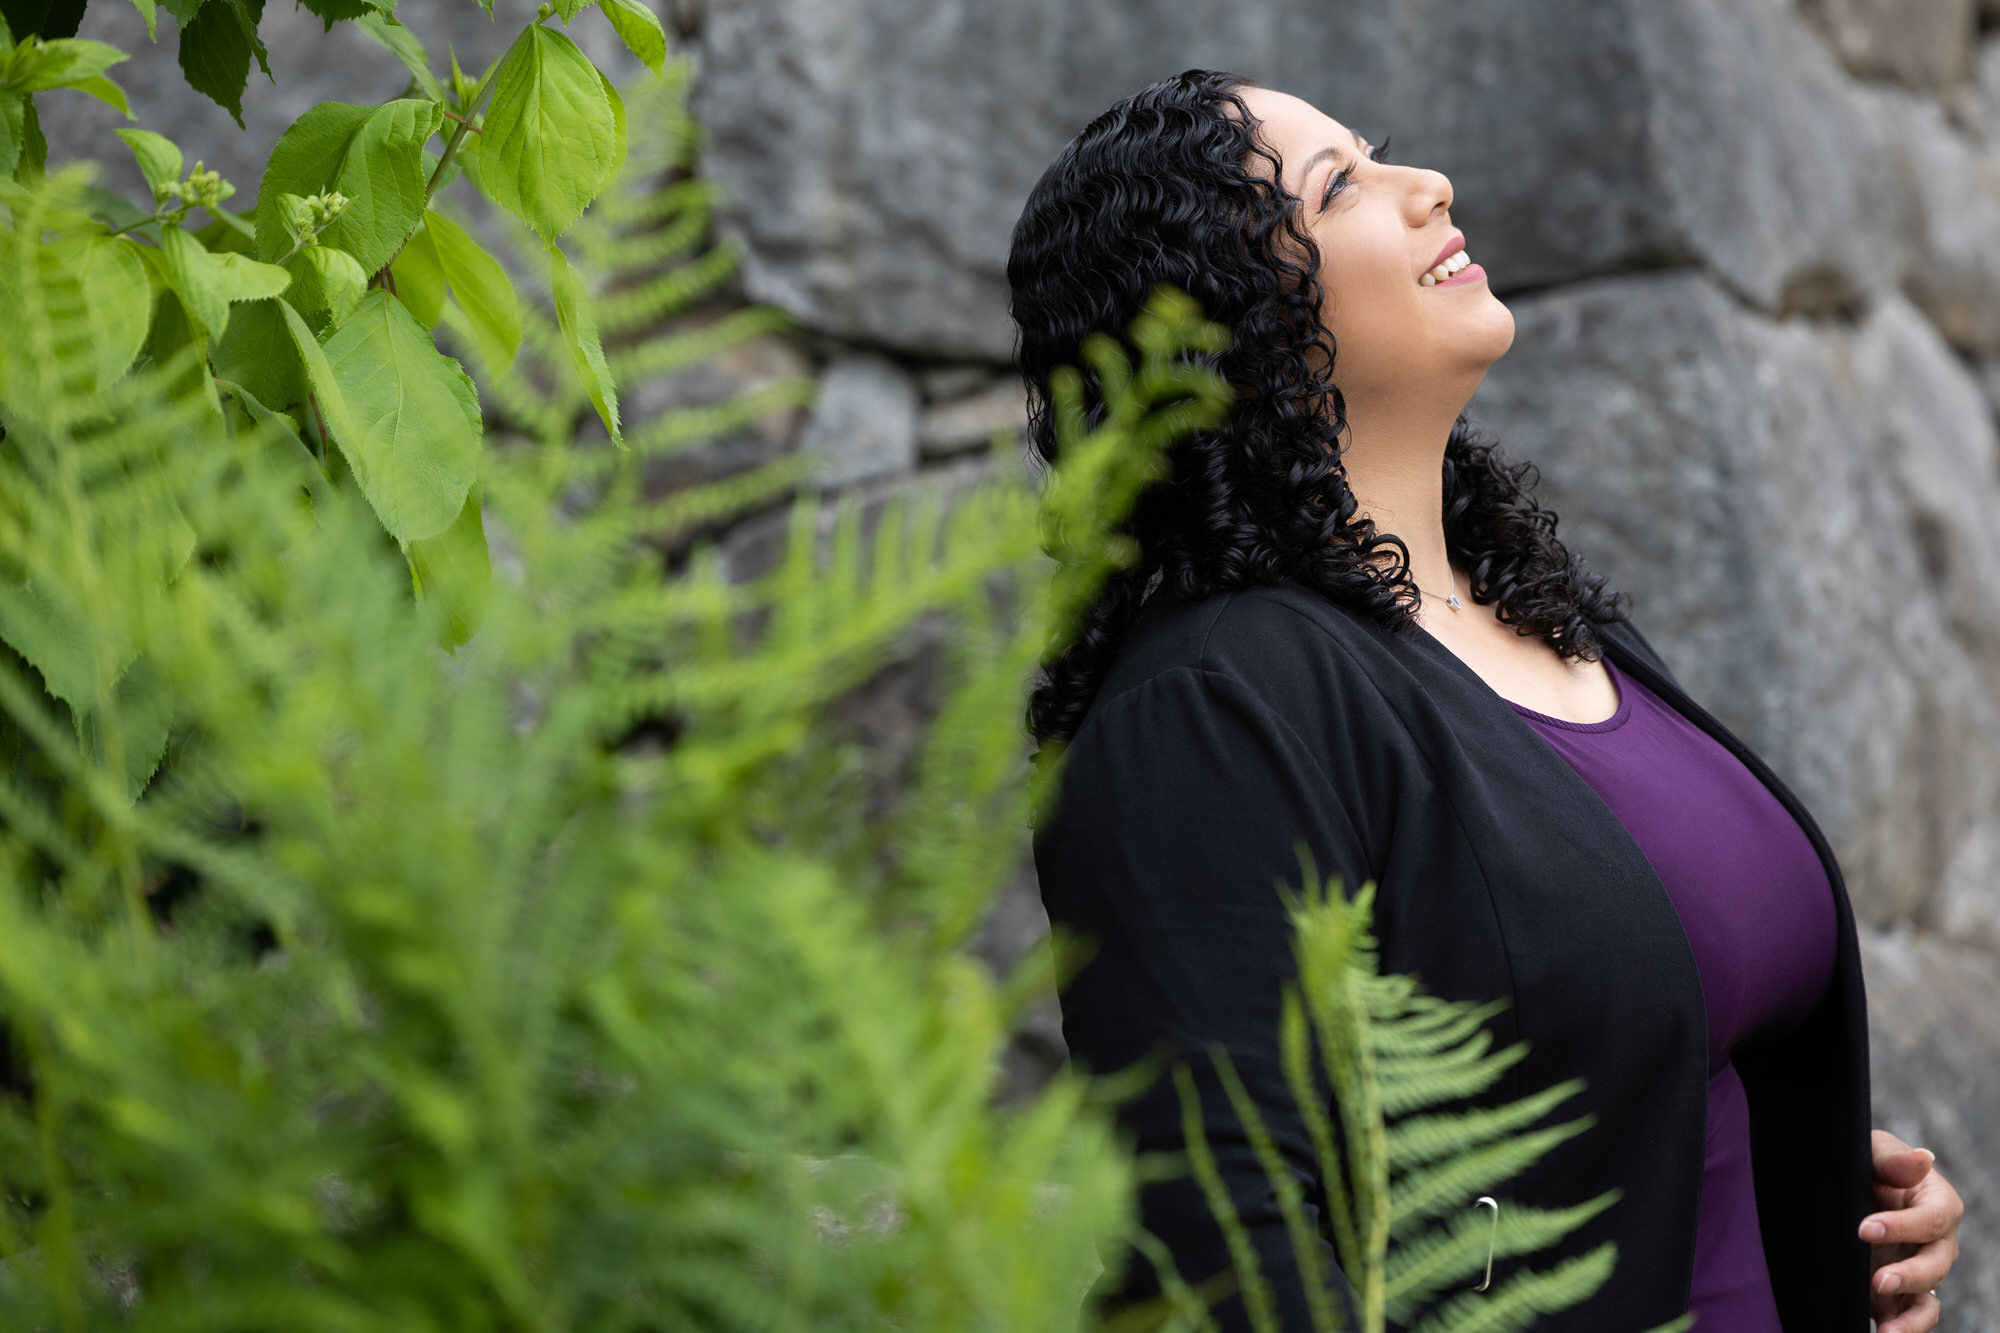 Empowered Voices-Mitglied trägt ein königsviolettes Oberteil und eine schwarze Strickjacke, lächelt und blickt in den Himmel, während es an einer grauen Steinmauer in der Nähe von grünem Farnlaub lehnt.